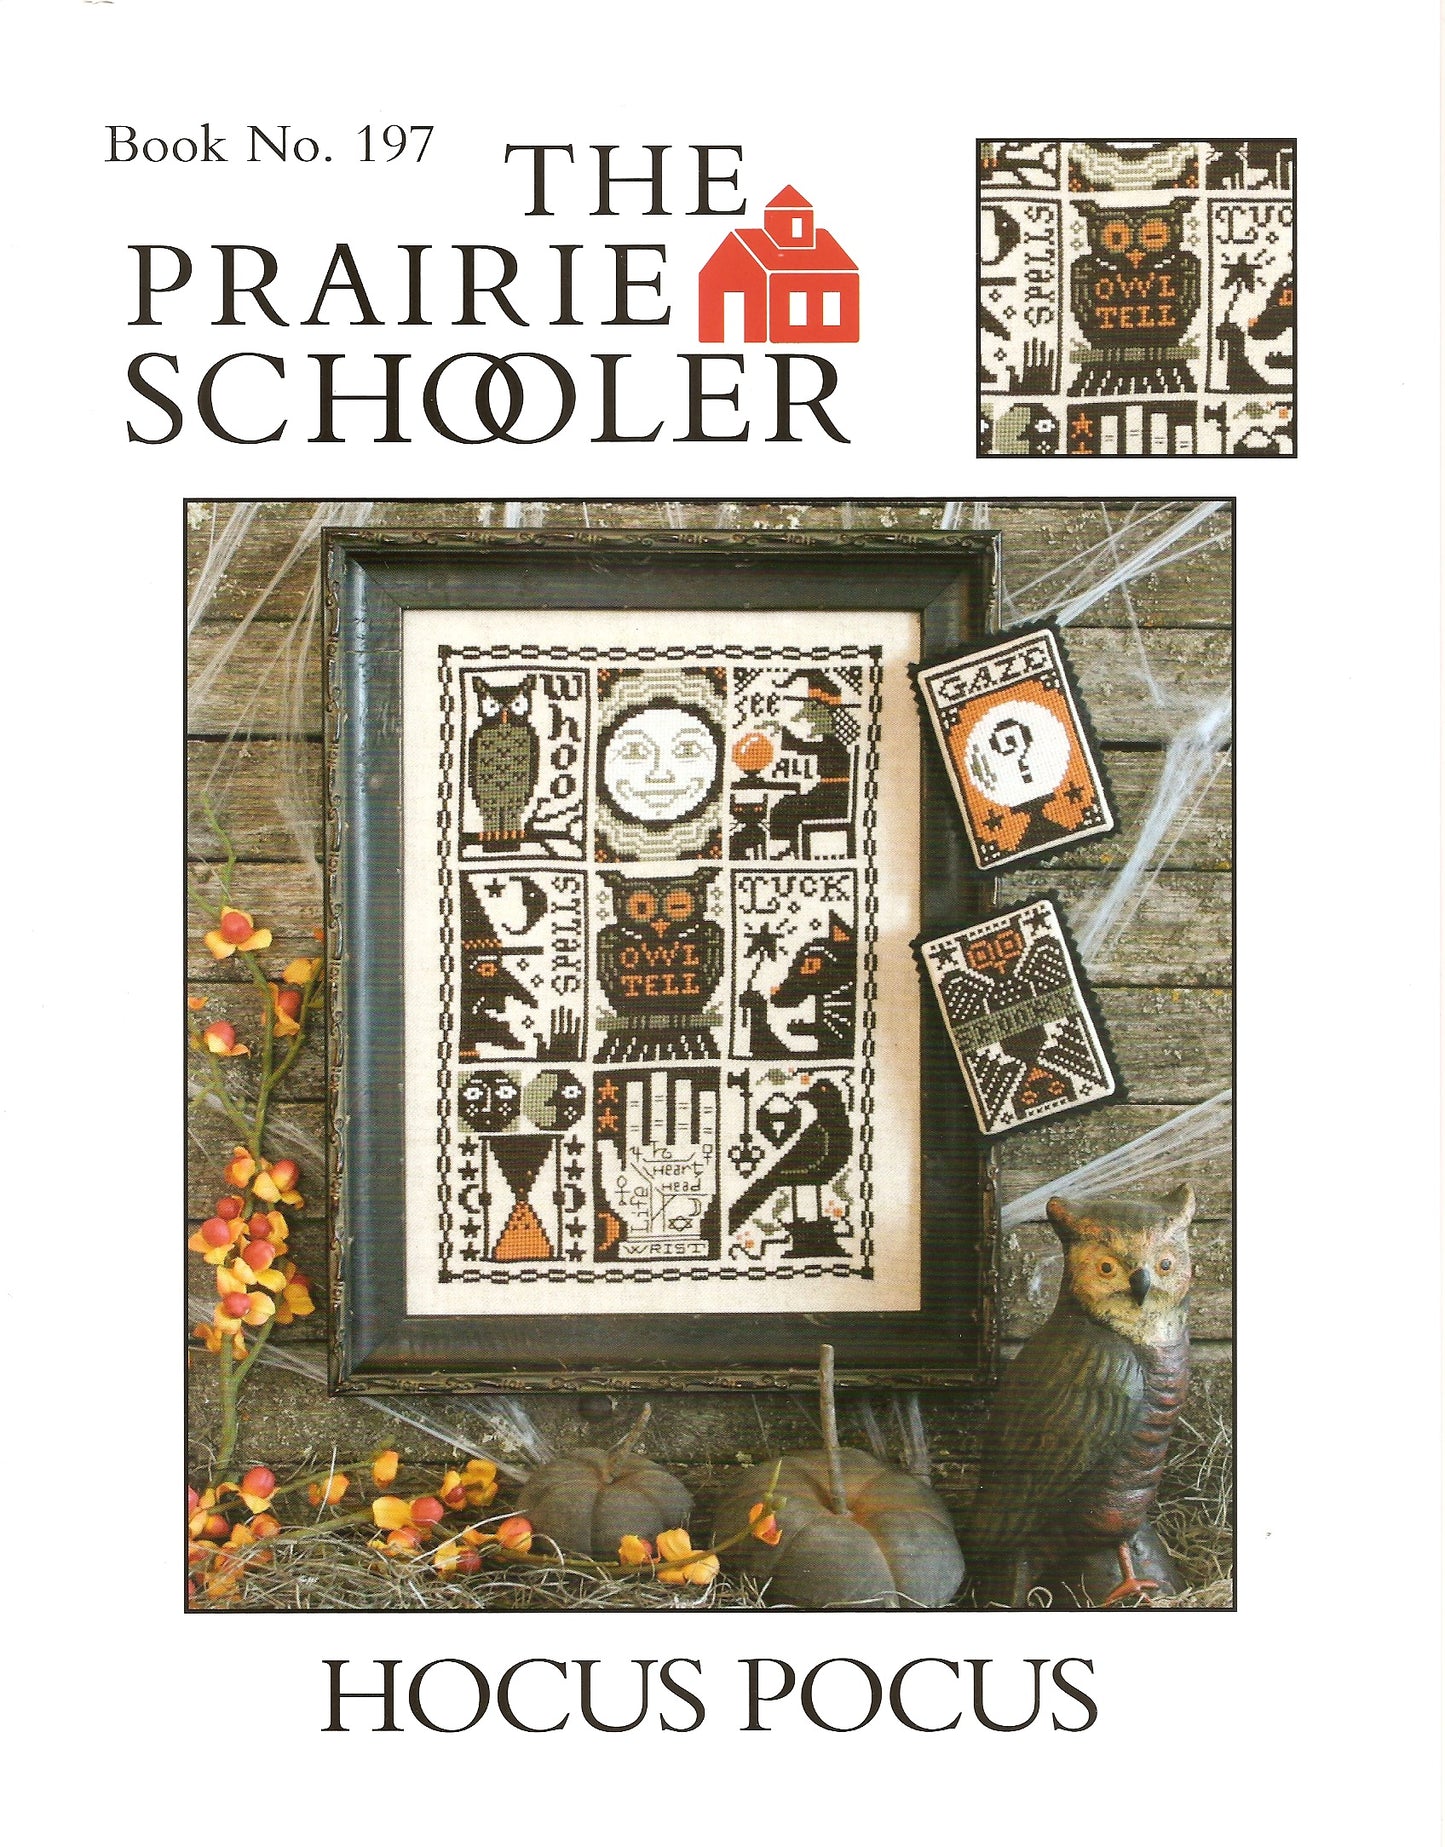 Prairie Schooler Hocus Pocus 197 Halloween cross stitch pattern